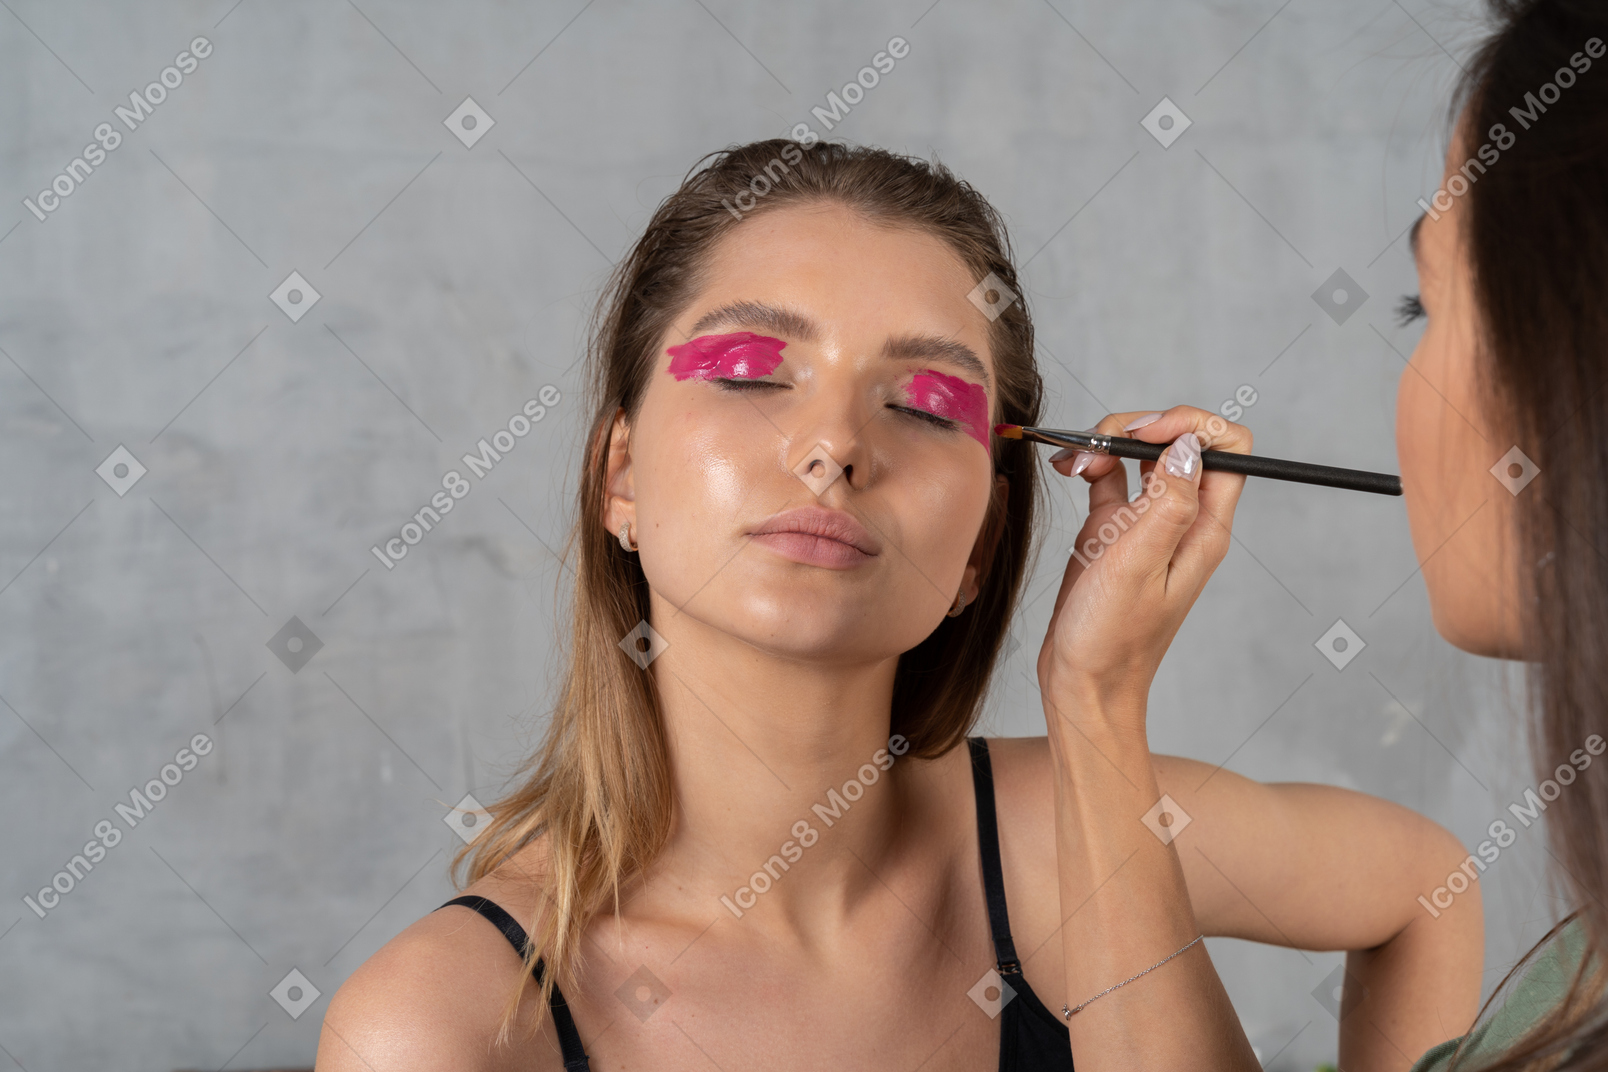 Retrato de uma jovem com os olhos fechados esperando que sua maquiagem seja finalizada